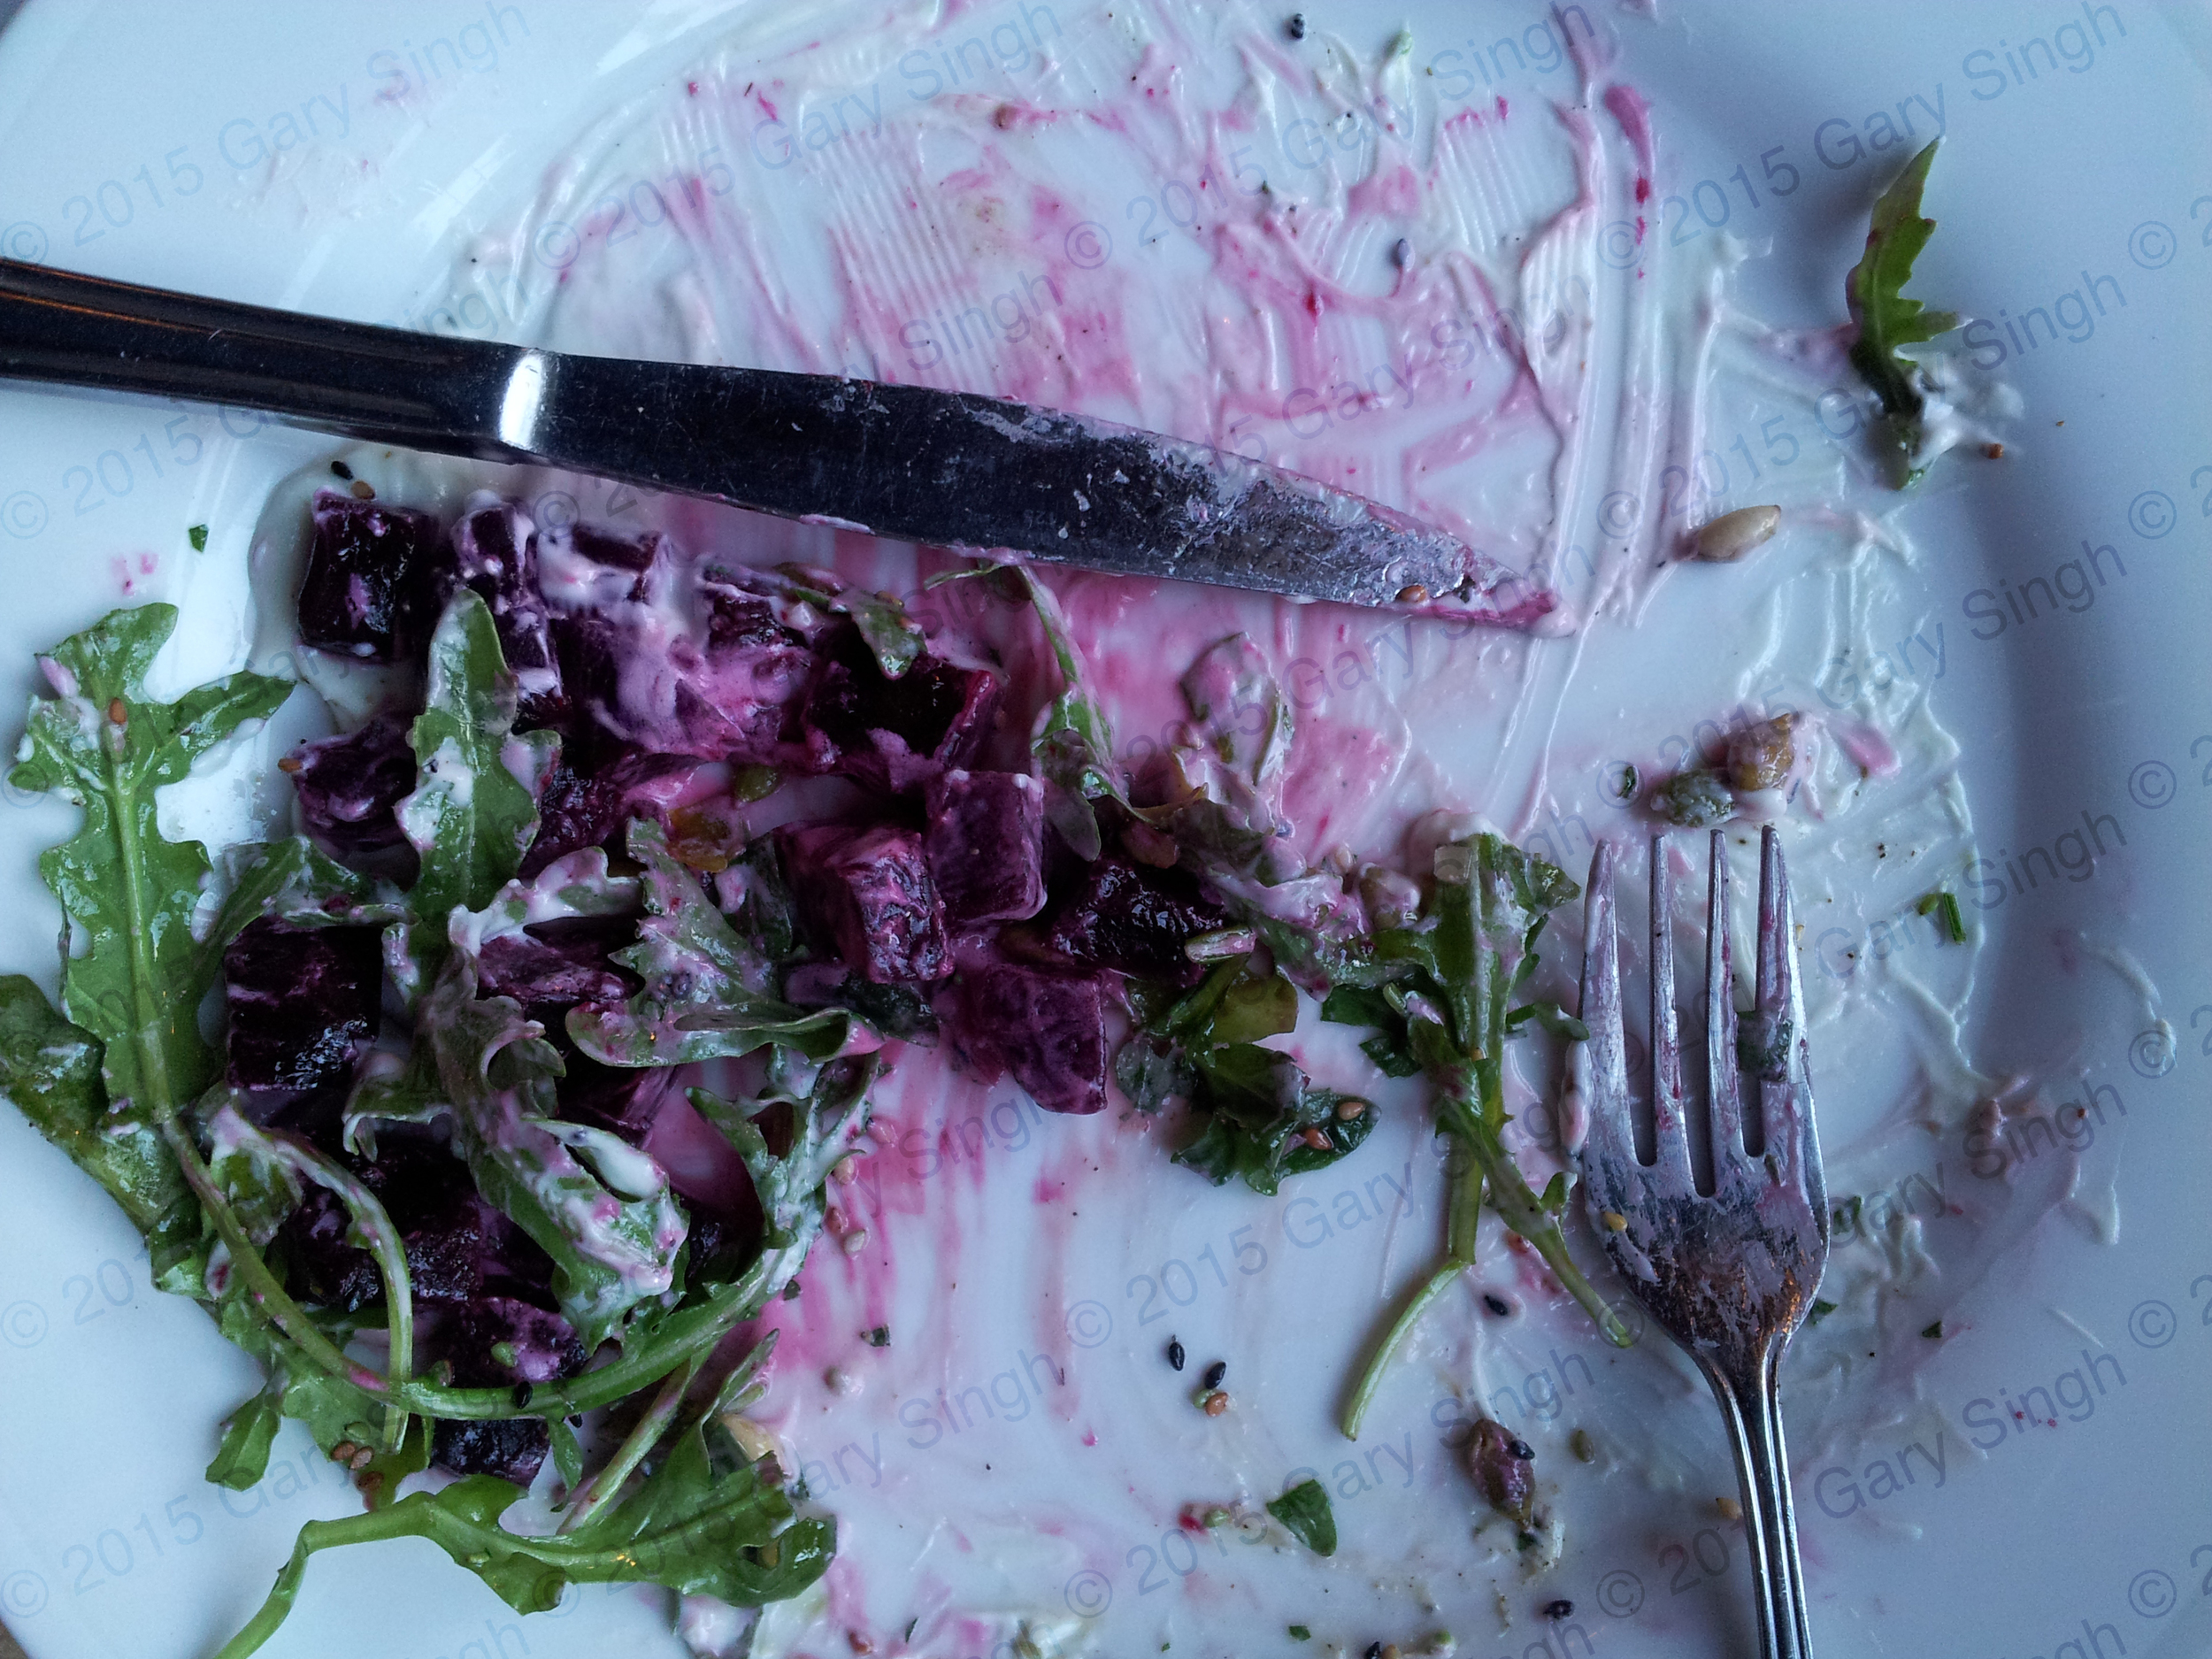 winnipeg-beet-salad.jpg